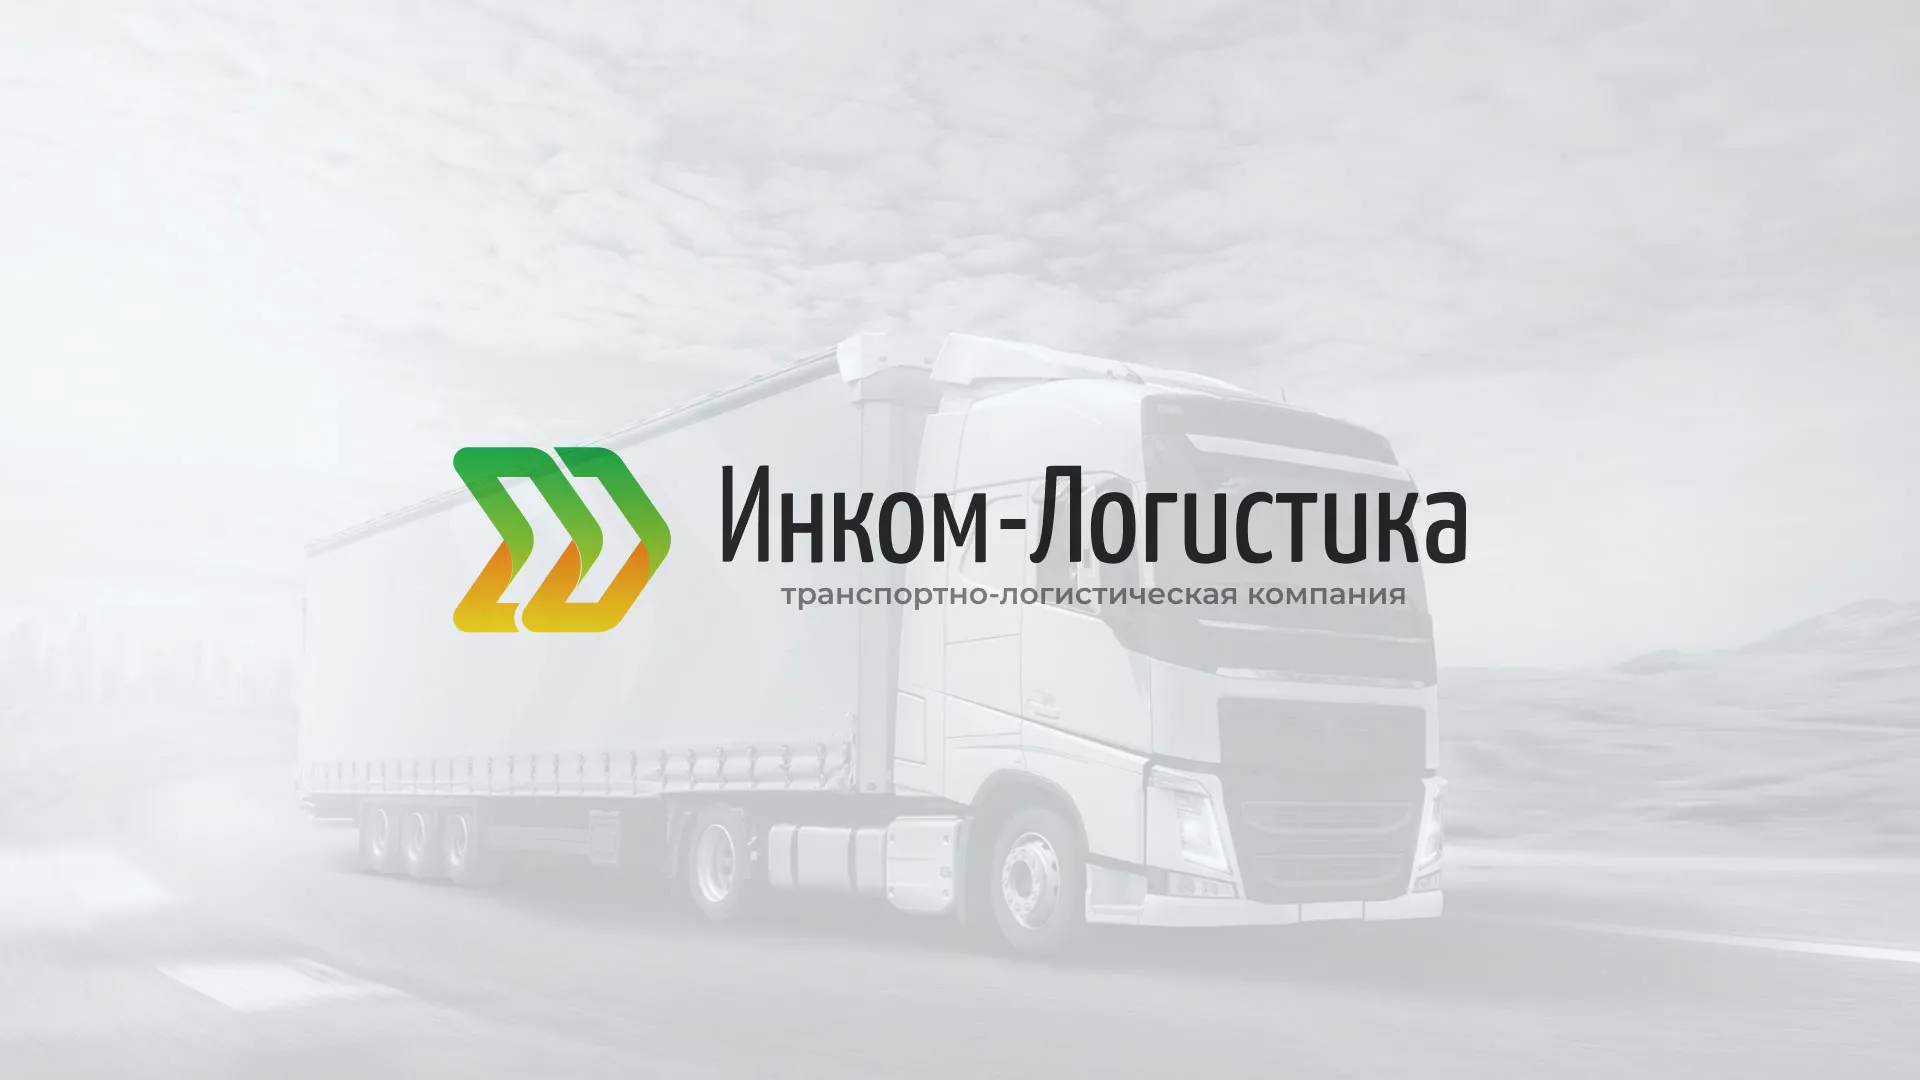 Разработка логотипа и сайта компании «Инком-Логистика» в Льгове